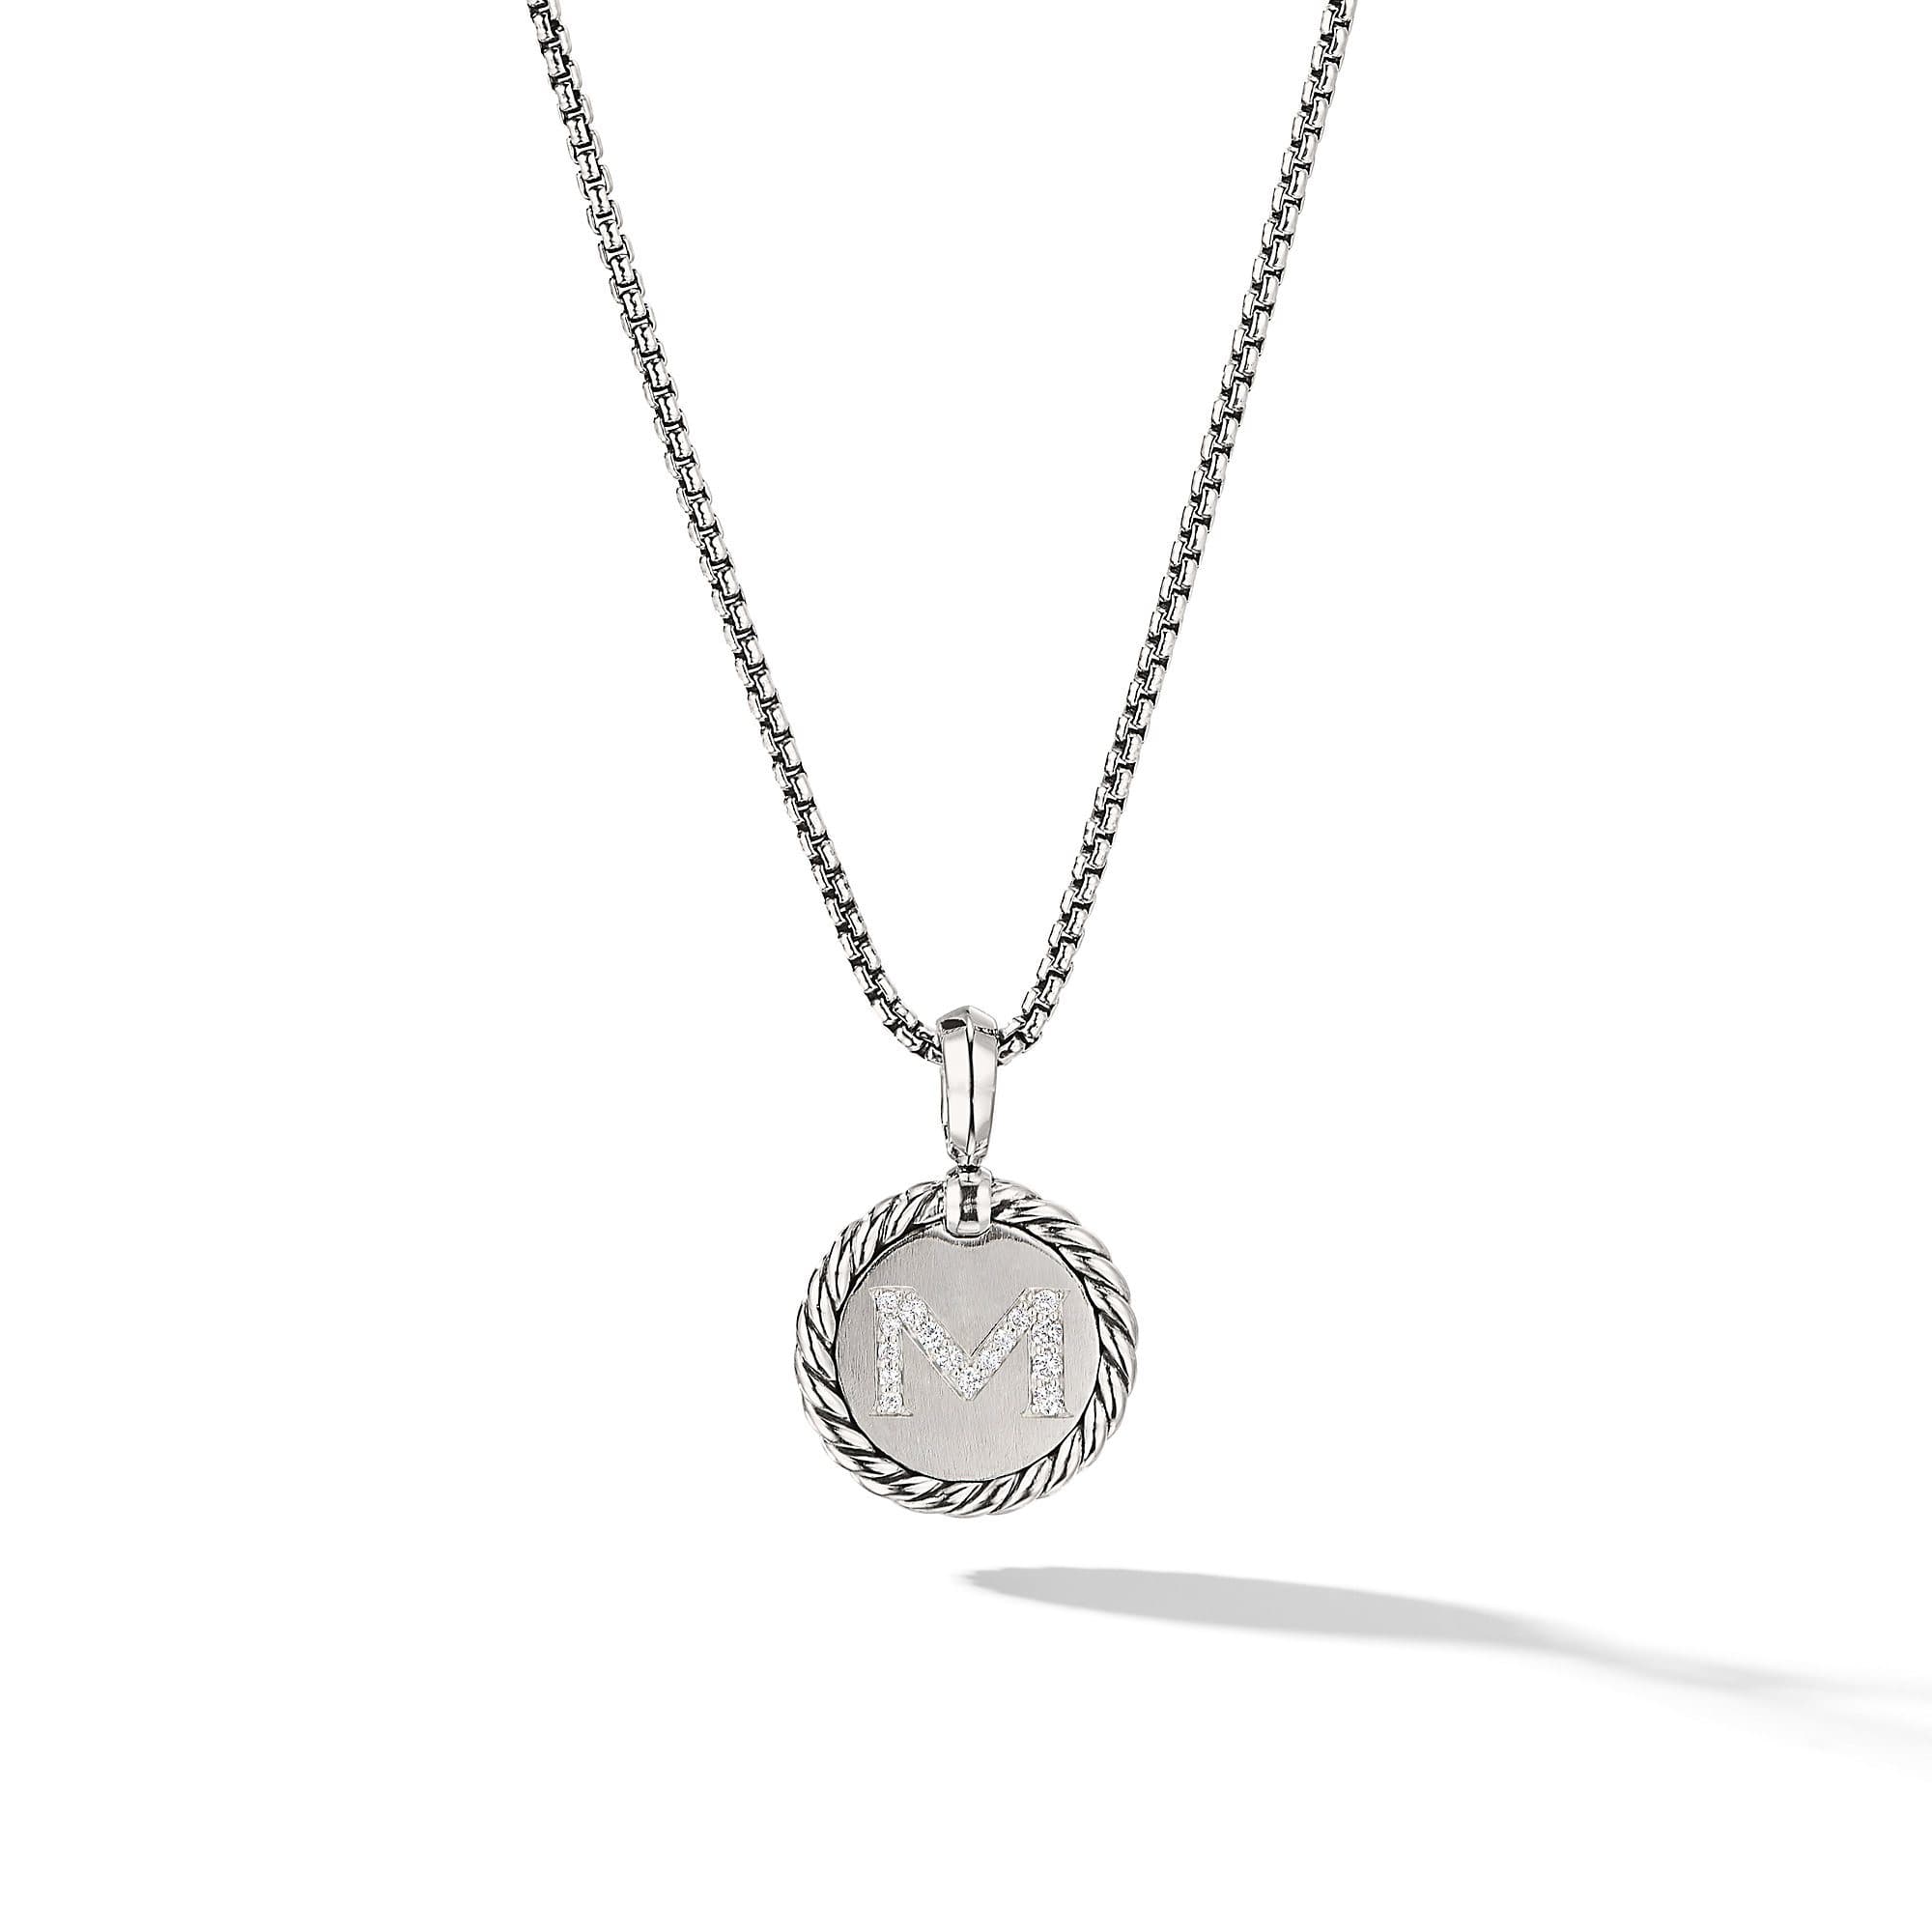 David Yurman M initial Charm Necklace with Diamonds